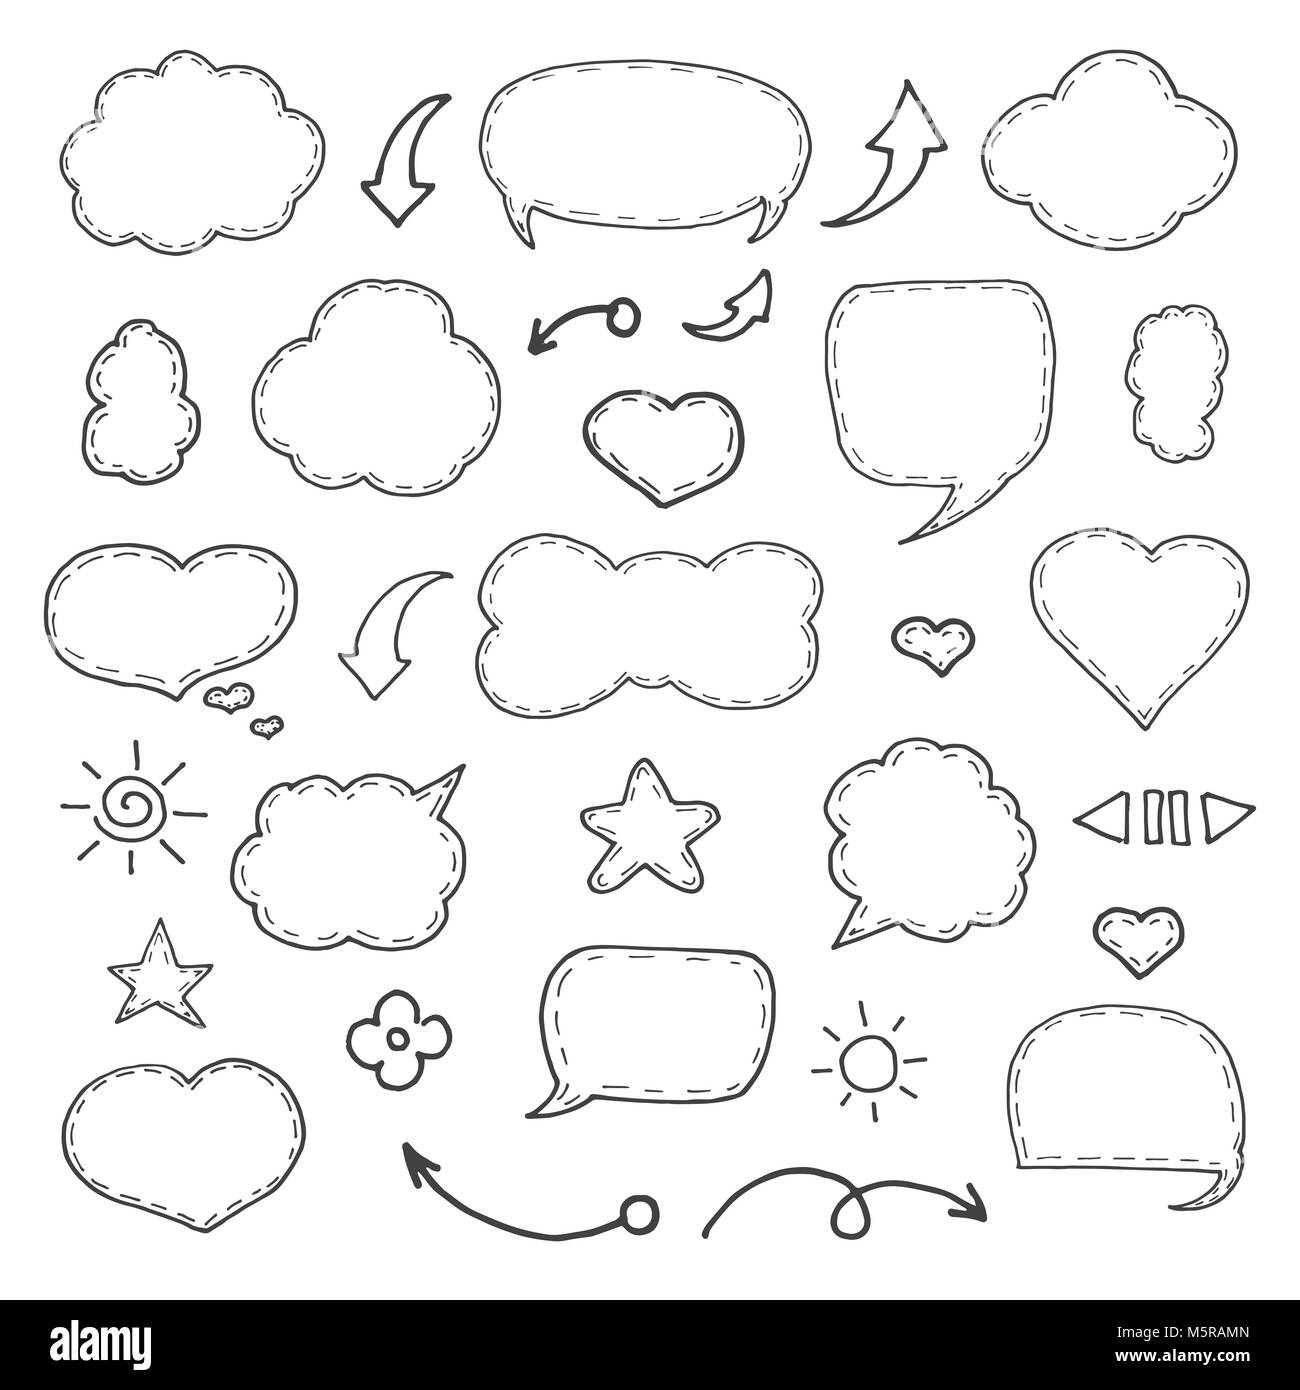 Pensare e parlare di fumetti. Collezione artistica di disegnato a mano stile doodle palloncino comico, cloud e di cuore. Illustrazione Vettoriale nel disegno stile. Illustrazione Vettoriale